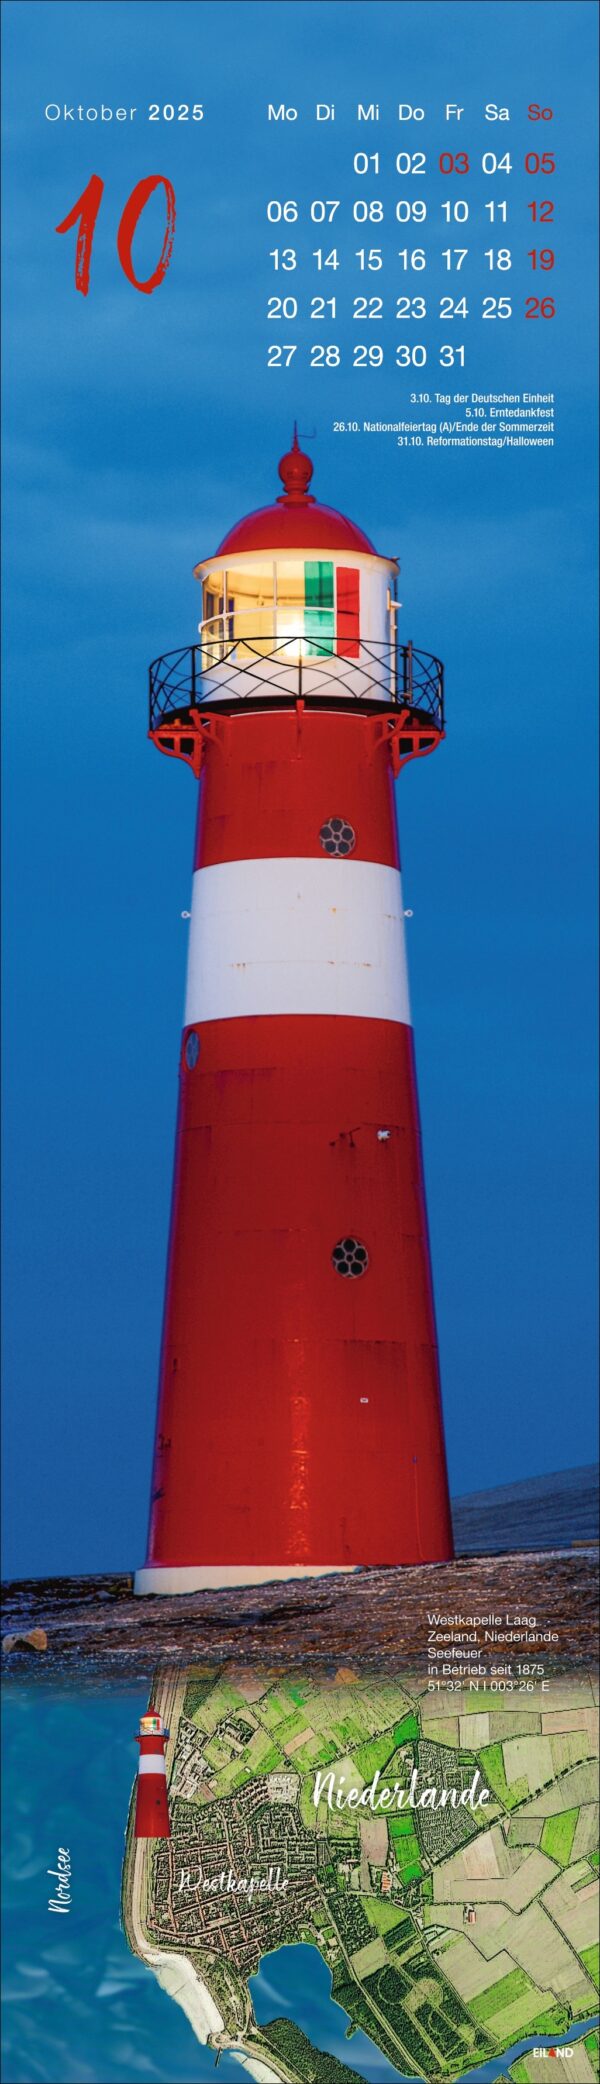 Eine Seite des LongEiland - Kalenders 2025 für Oktober mit einem großen rot-weißen Leuchtturm vor einem strahlend blauen Himmel. Die Daten werden vertikal auf der rechten Seite angezeigt, und eine Karte der Niederlande befindet sich auf der